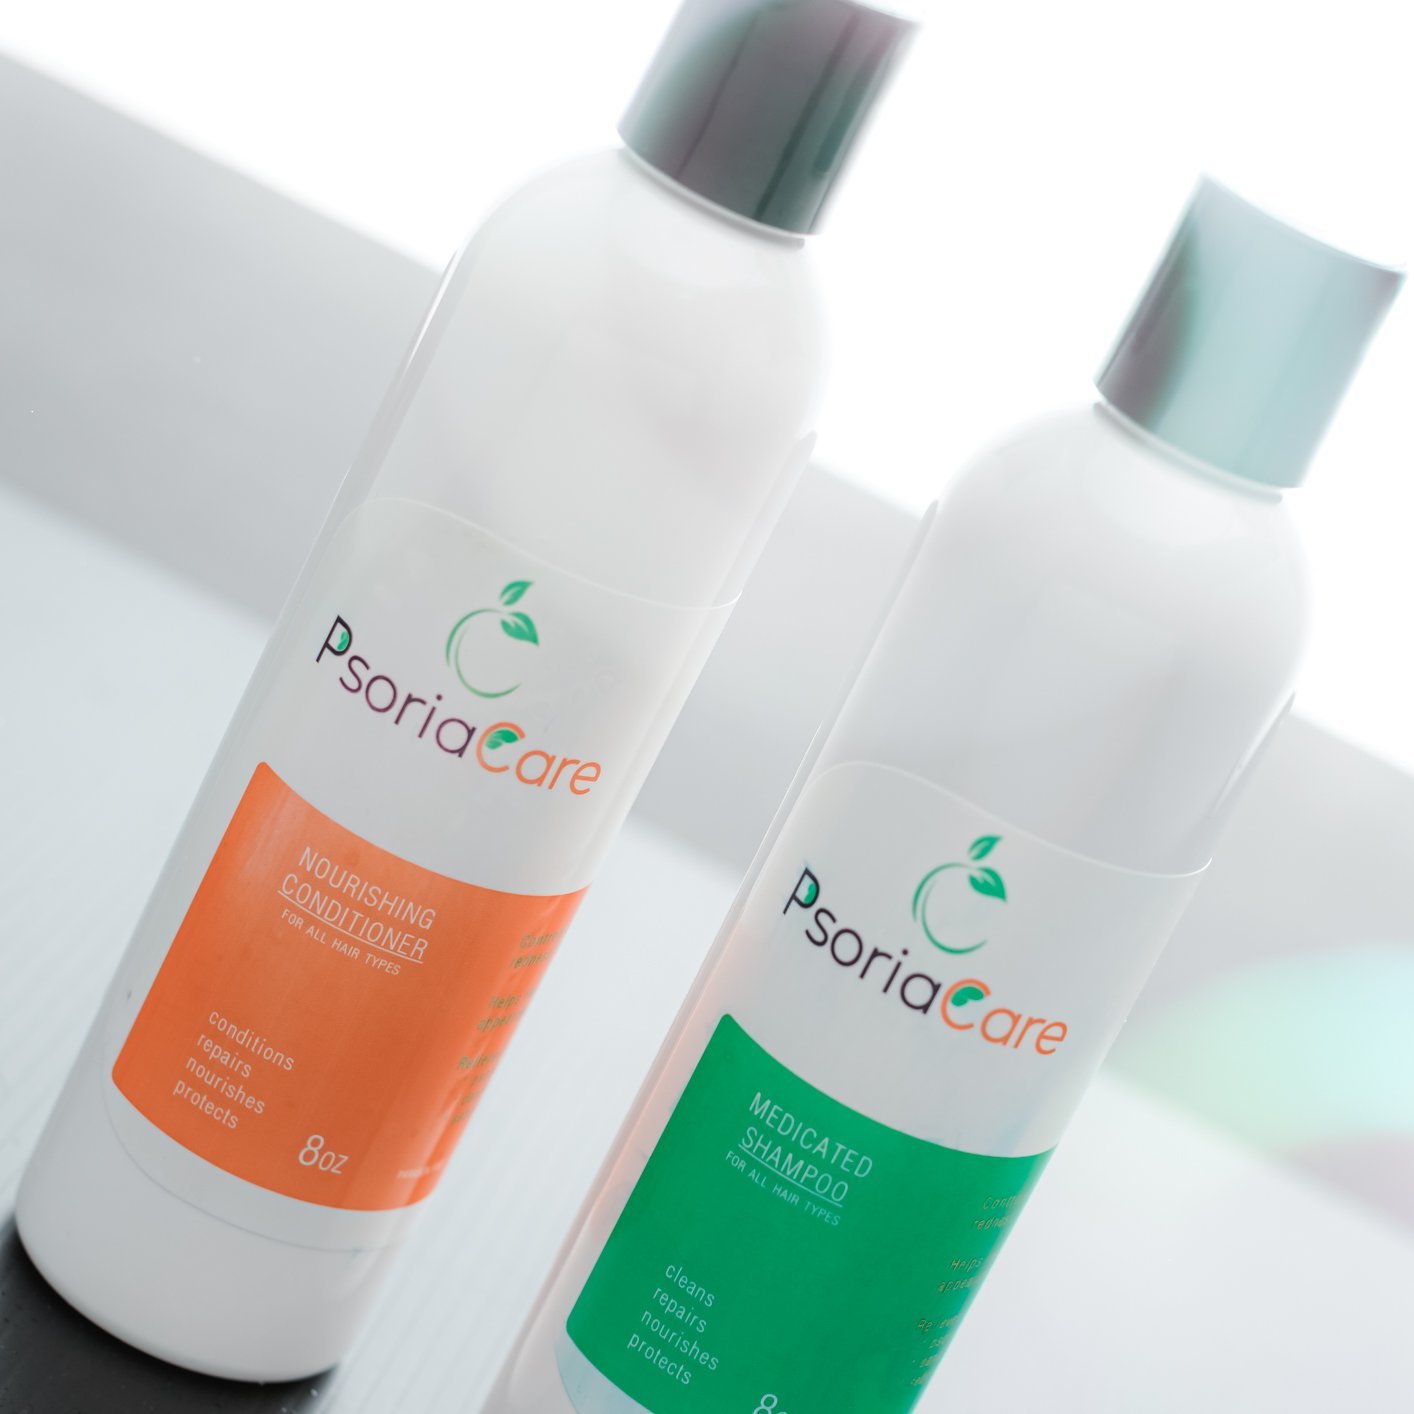 PsoriaCare Shampoo & Conditioner